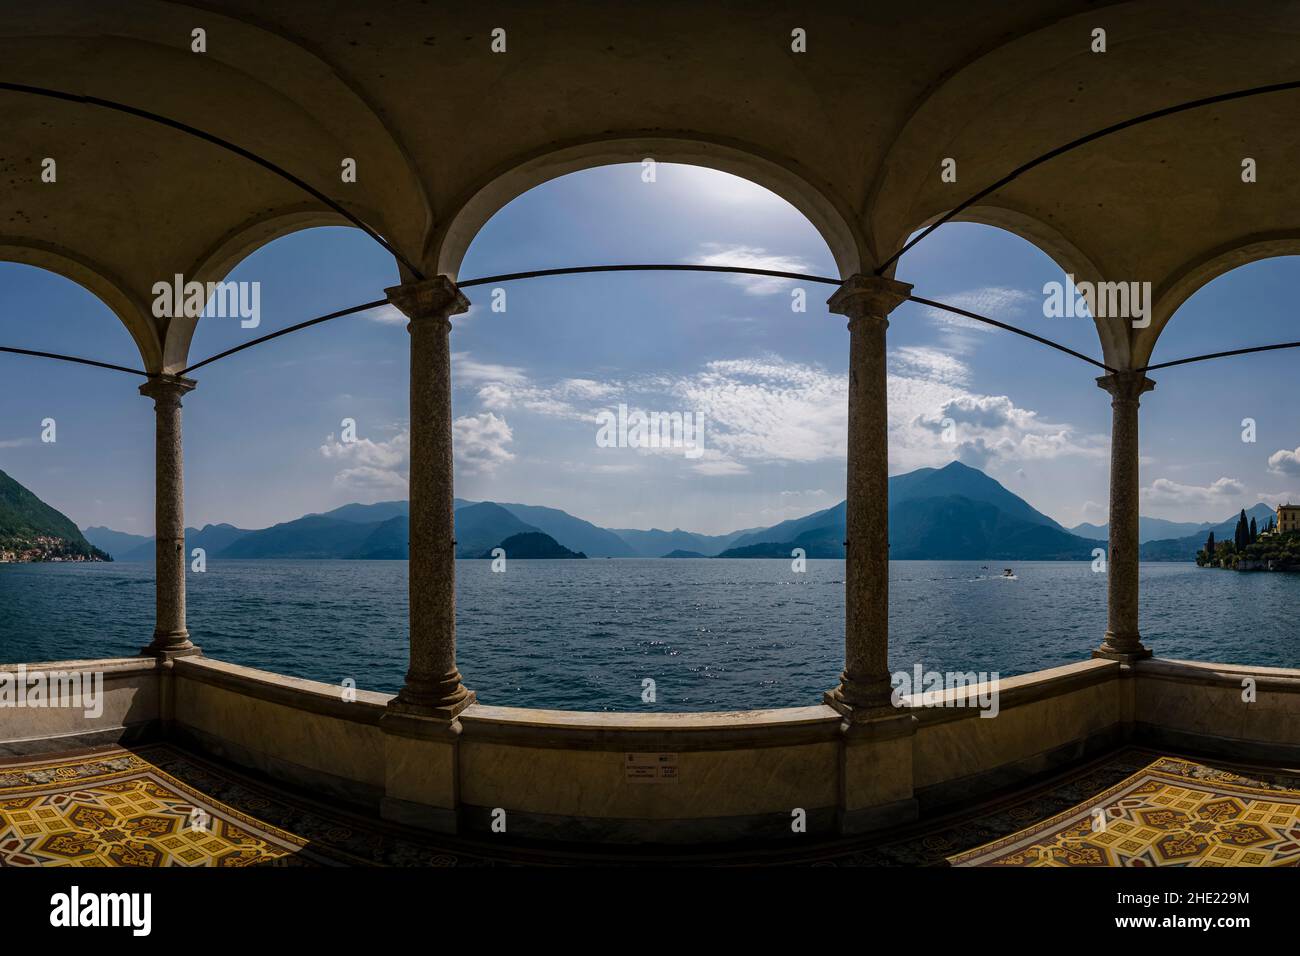 Vue panoramique sur le lac de Côme et les montagnes environnantes depuis les arcades de Giardino di Villa Monastero. Banque D'Images